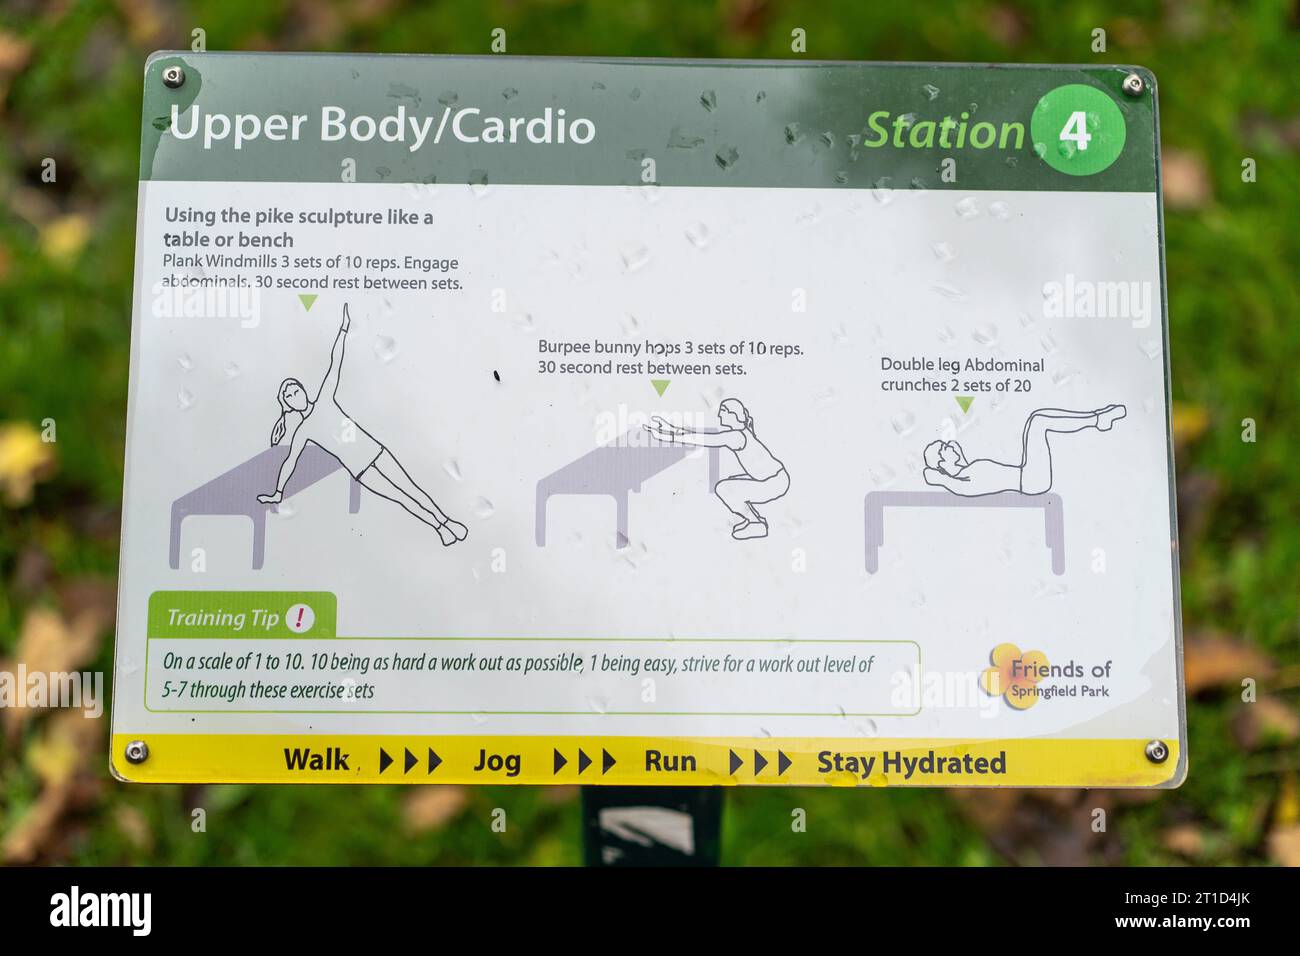 Tableau d'affichage d'exercices cardio dans un parc public, Royaume-Uni montrant divers exercices pour garder la forme et rester en bonne santé. Banque D'Images